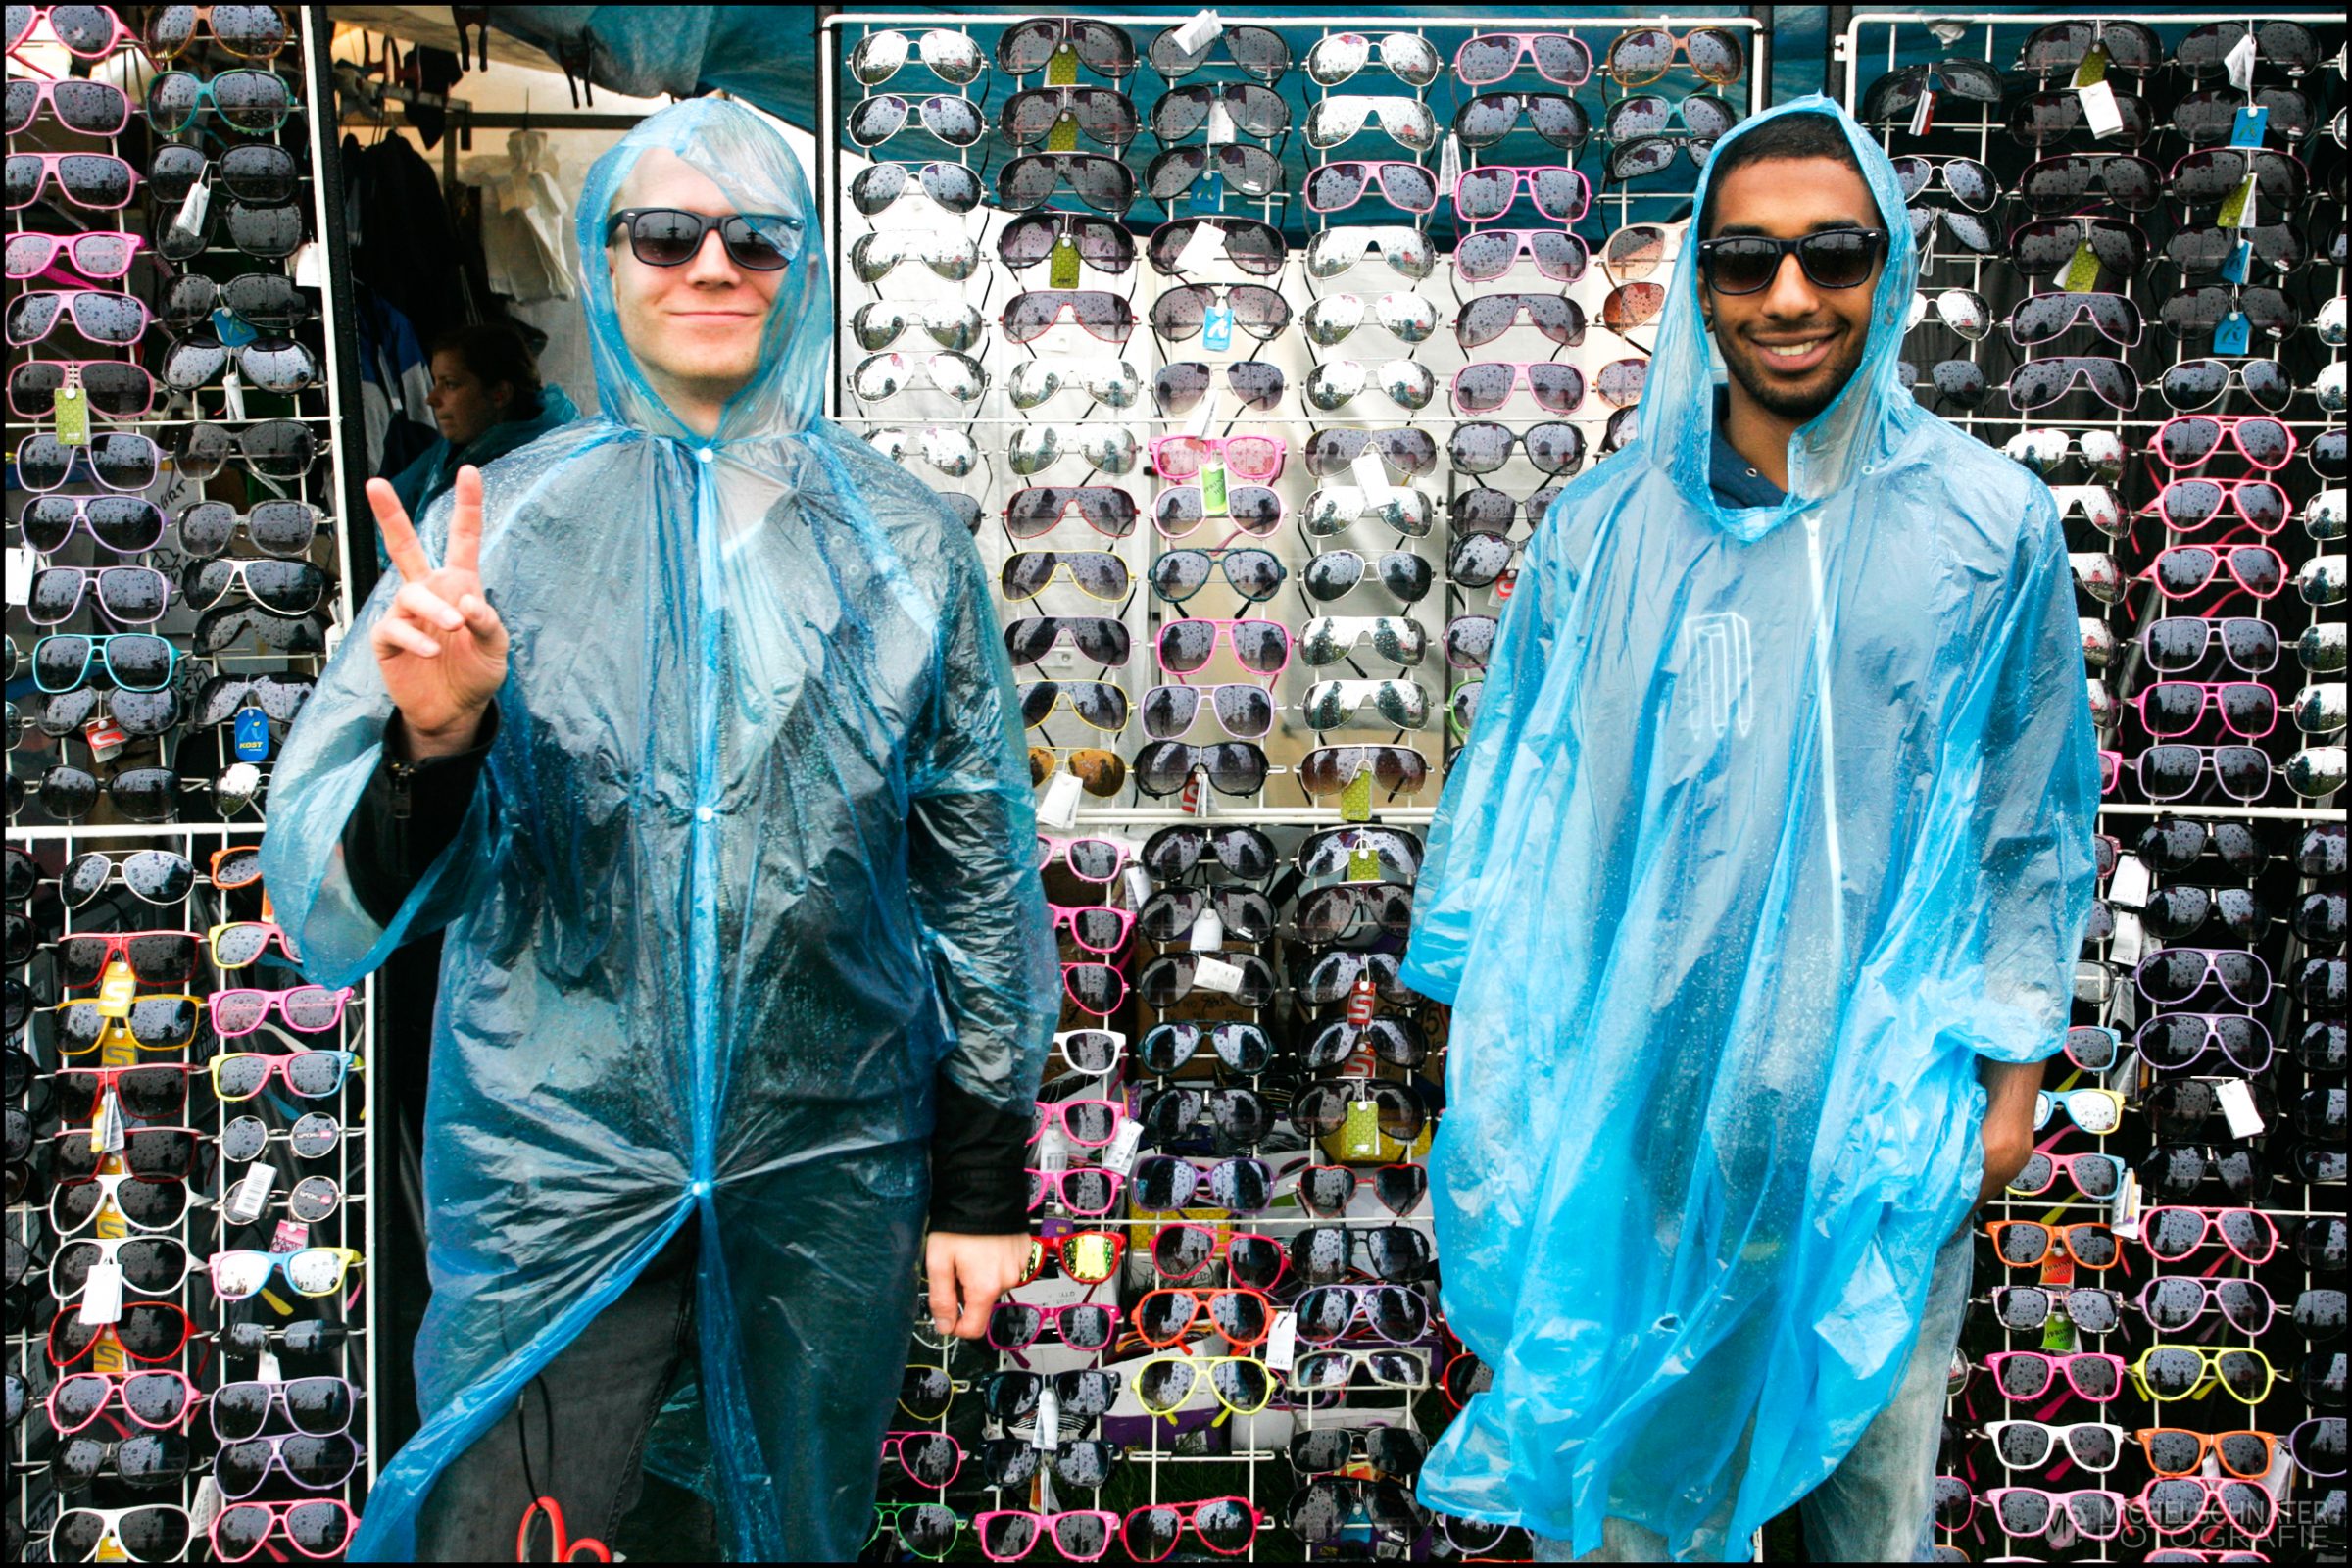 twee mannen in de regen met regencape en zonnebril op proberen brillen te verkopen tijdens regenachtig festival foto gemaakt door Michel Schnater